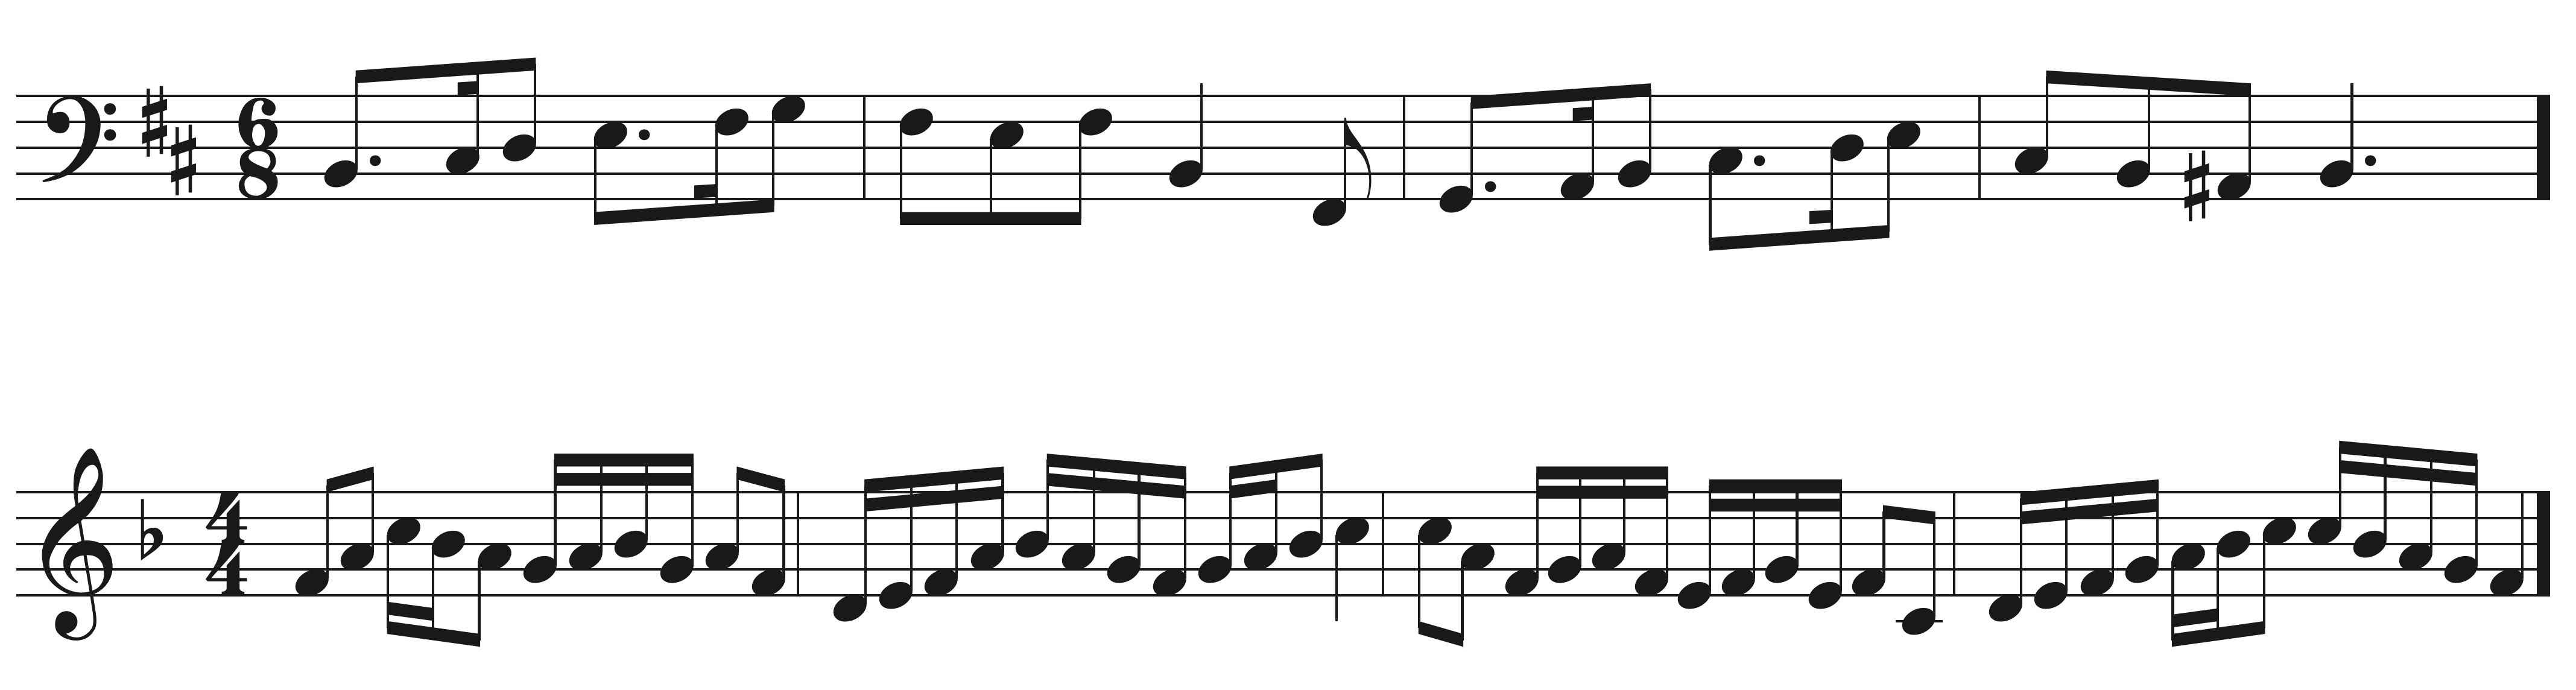 Harmonic Rhythm Sight Singing exercise example